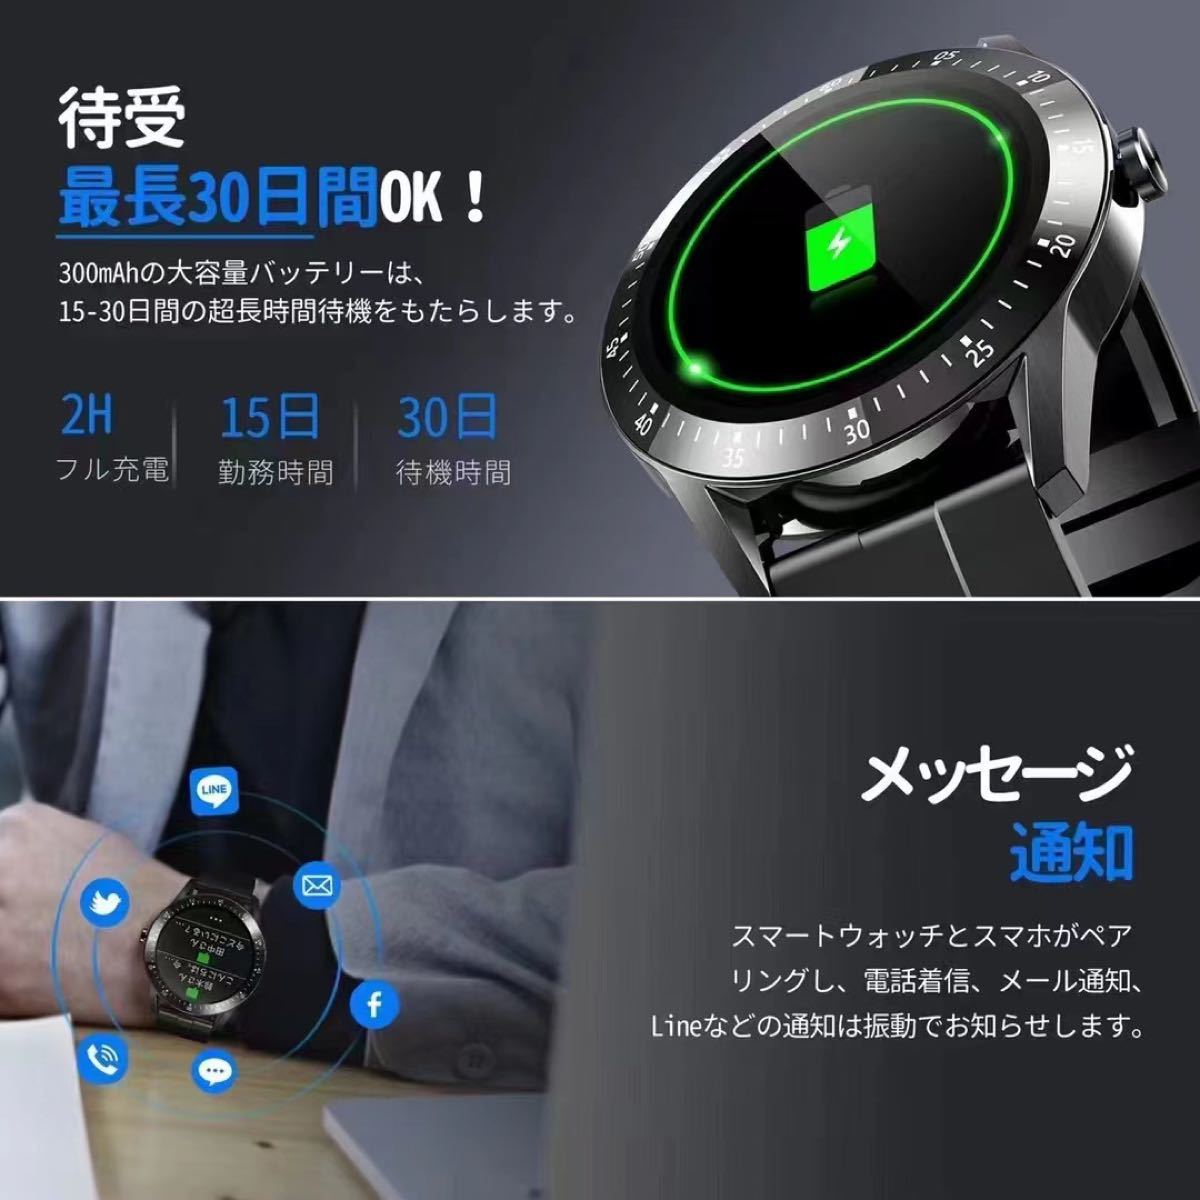 スマートウォッチ 2021最新版 丸型 防水腕時計型 多機能